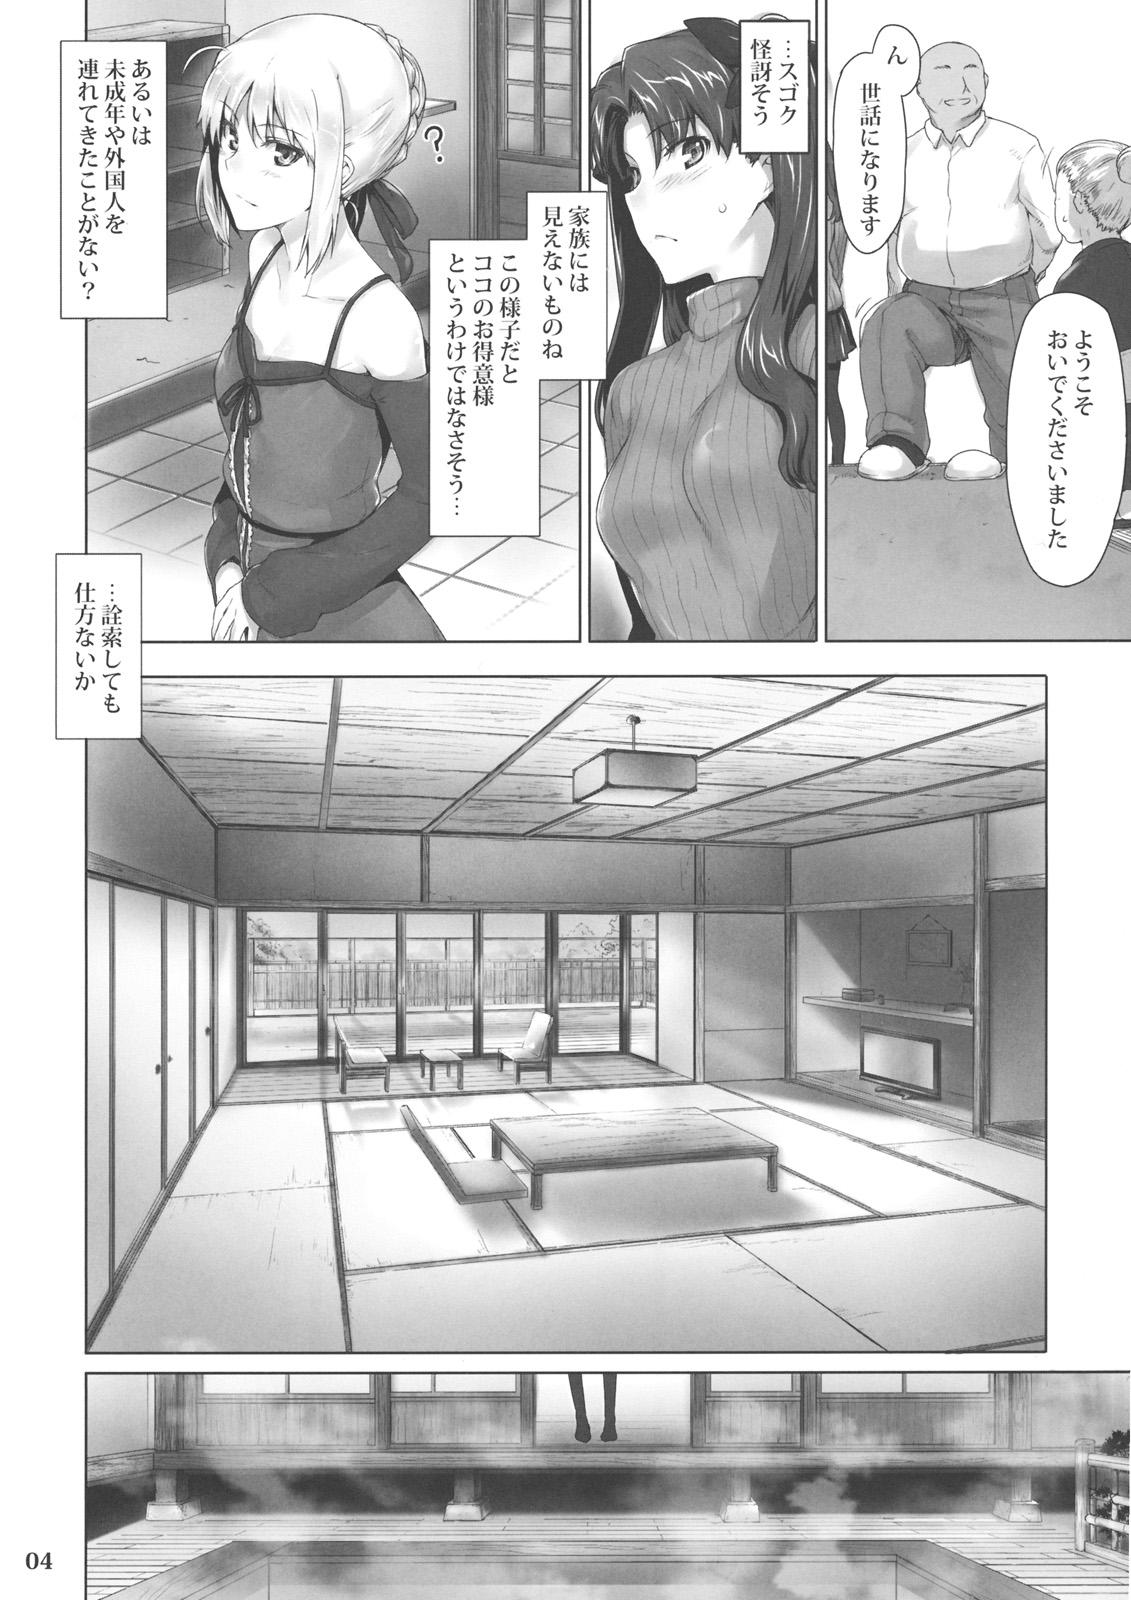 High Tosaka-ke no Kakei Jijou 8 - Fate stay night Gorgeous - Page 3